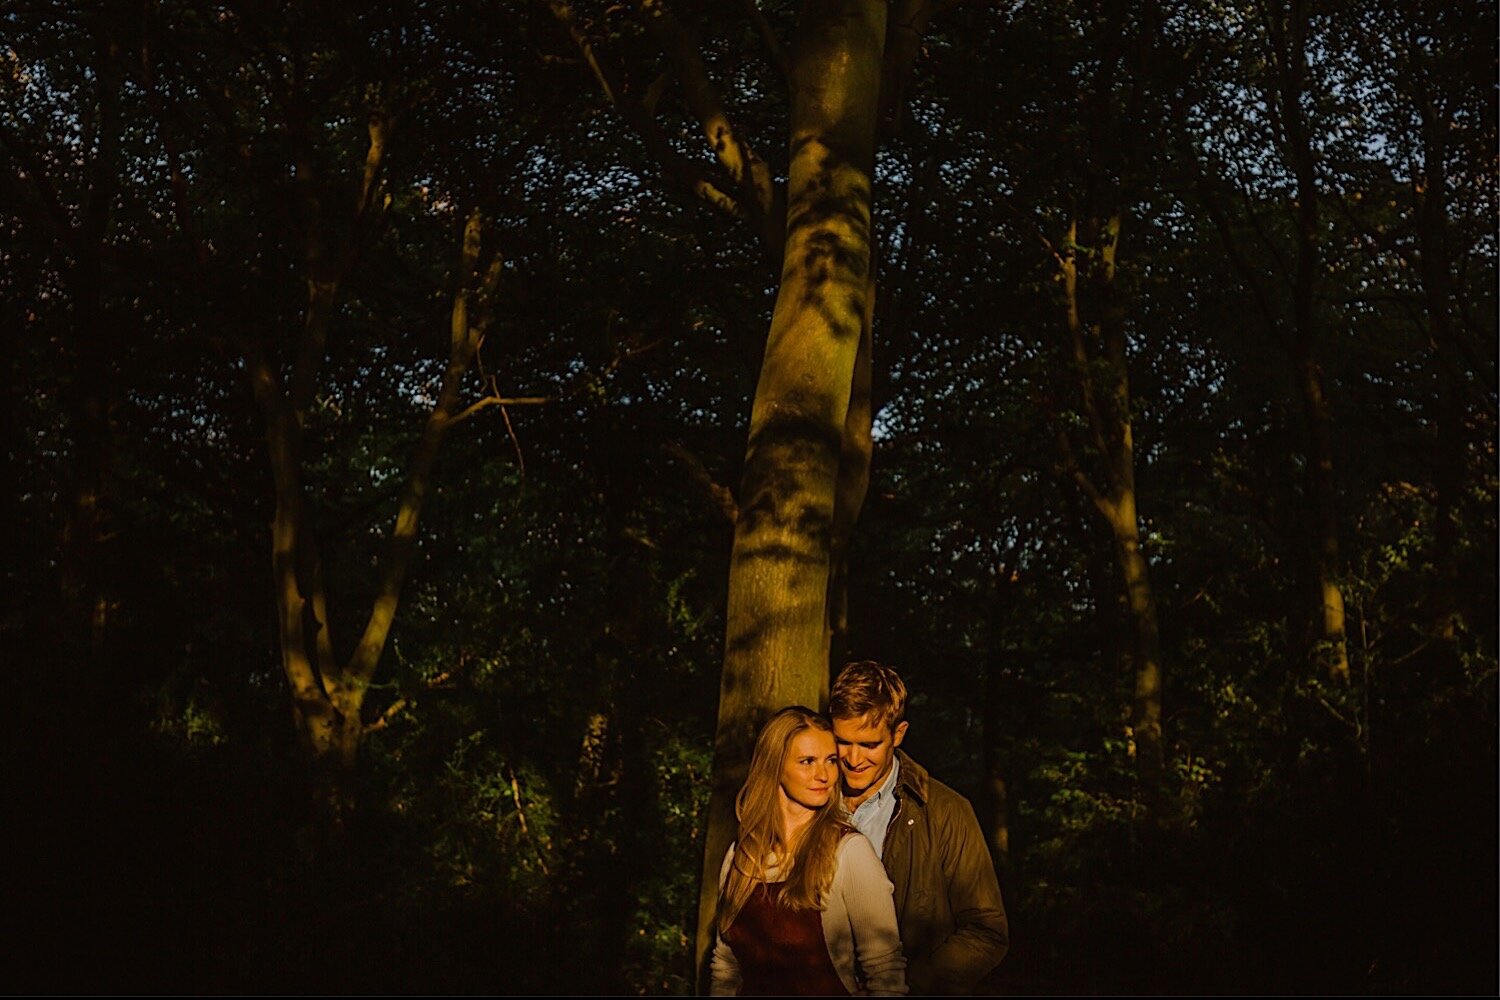 11_TWS-64_couple_autumn_engagement_sunset_shoot_henley_photography_woodland_wedding.jpg